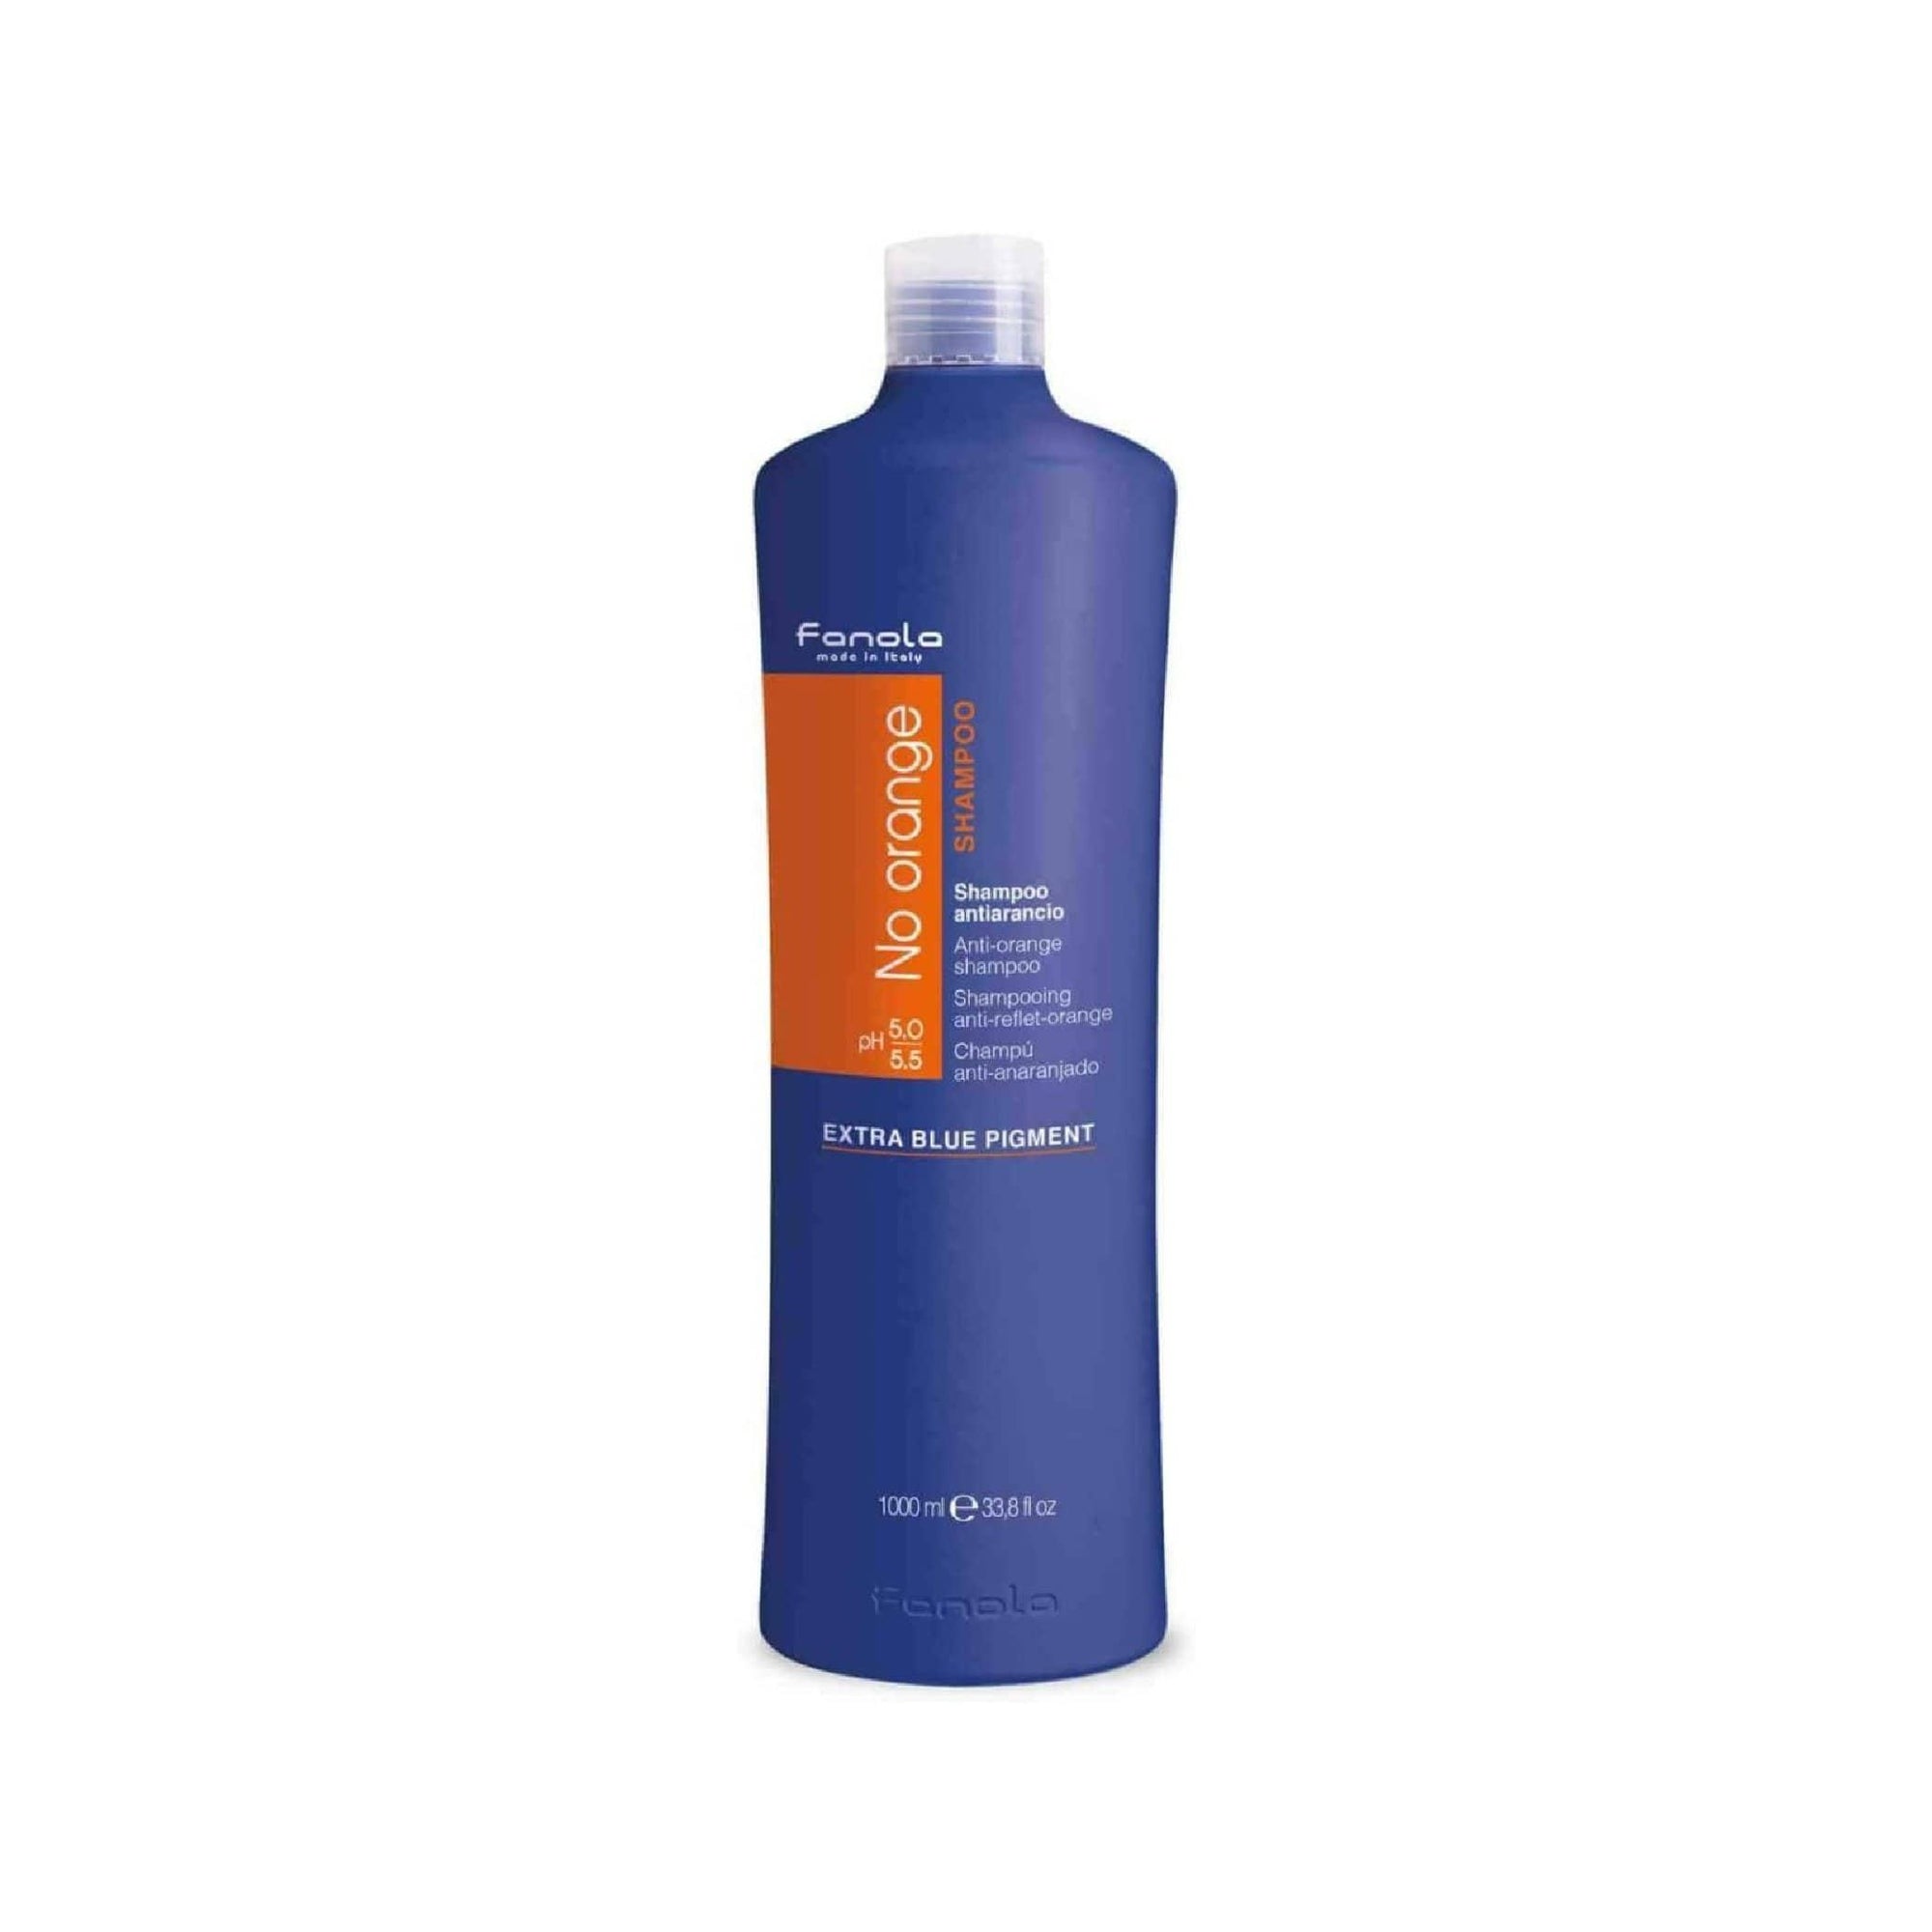 Fanola No Orange Shampoo Extra Blue Pigment 1000ml - Awarid UAE